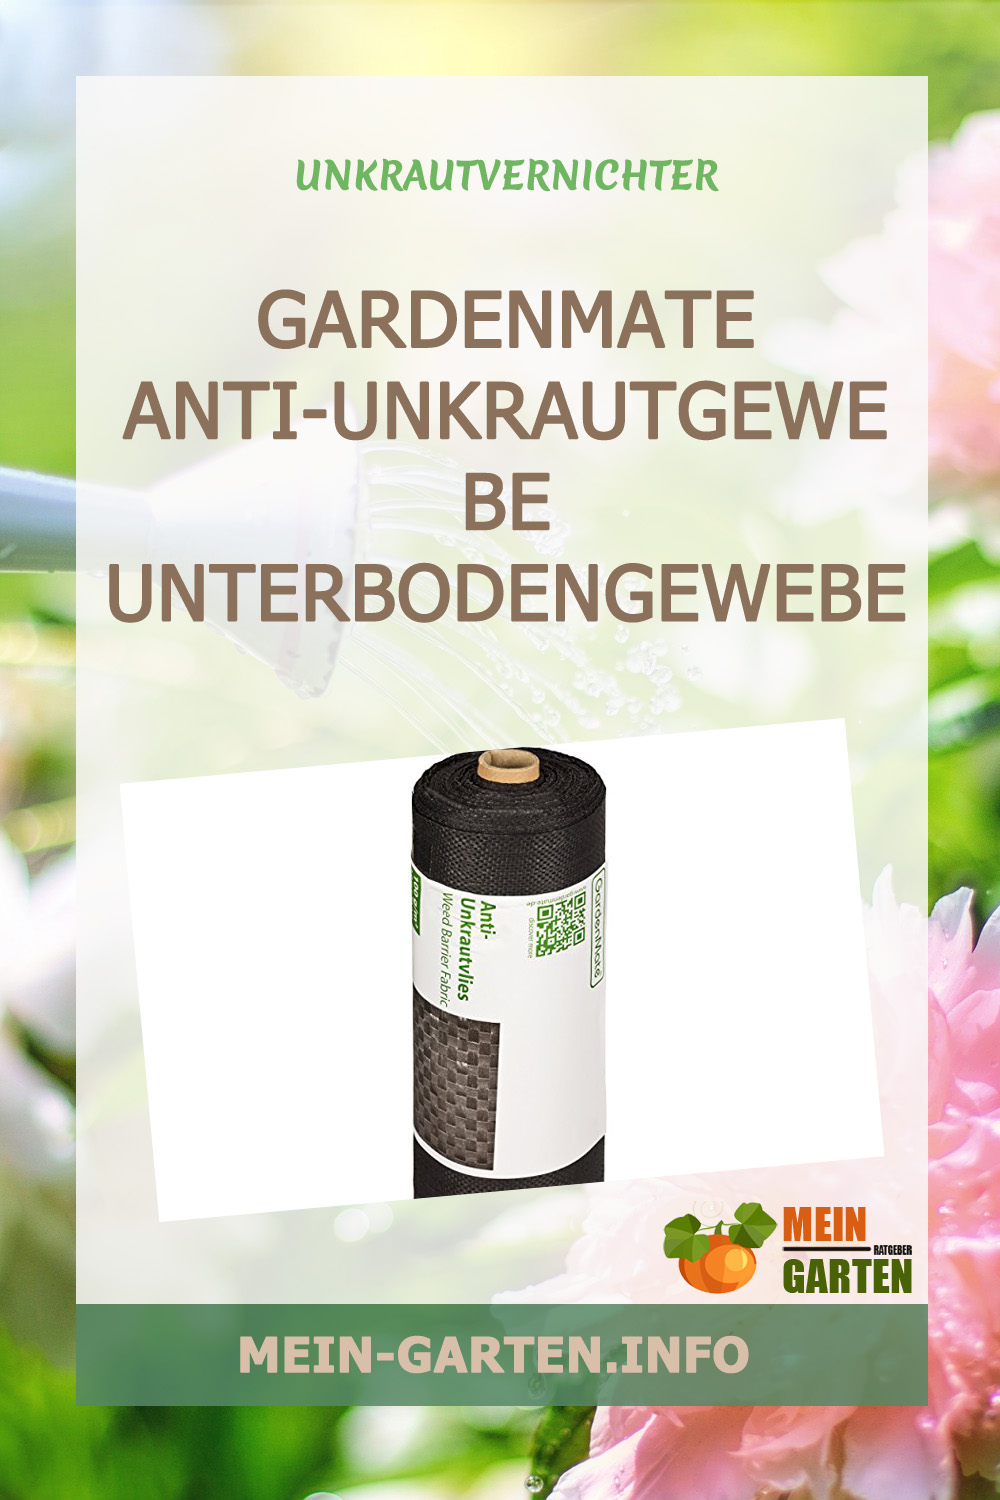 GardenMate Anti-Unkrautgewebe Unterbodengewebe Bändchengewebe UV stabil 100g/m² günstig kaufen